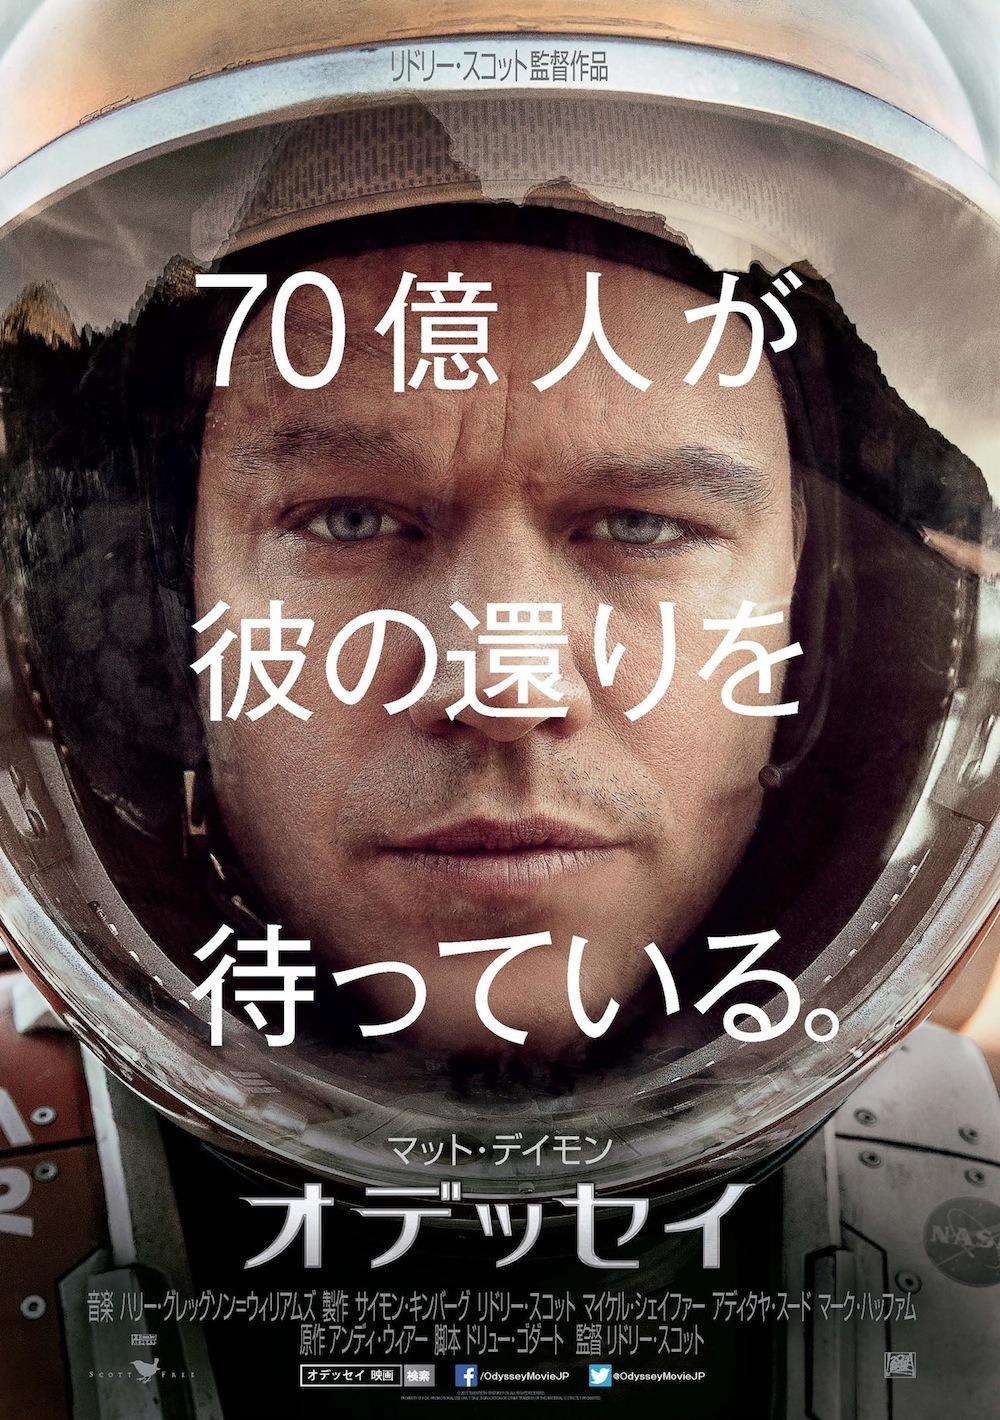 マット デイモン 火星に取り残される宇宙飛行士に オデッセイ 公開へ Cinemacafe Net